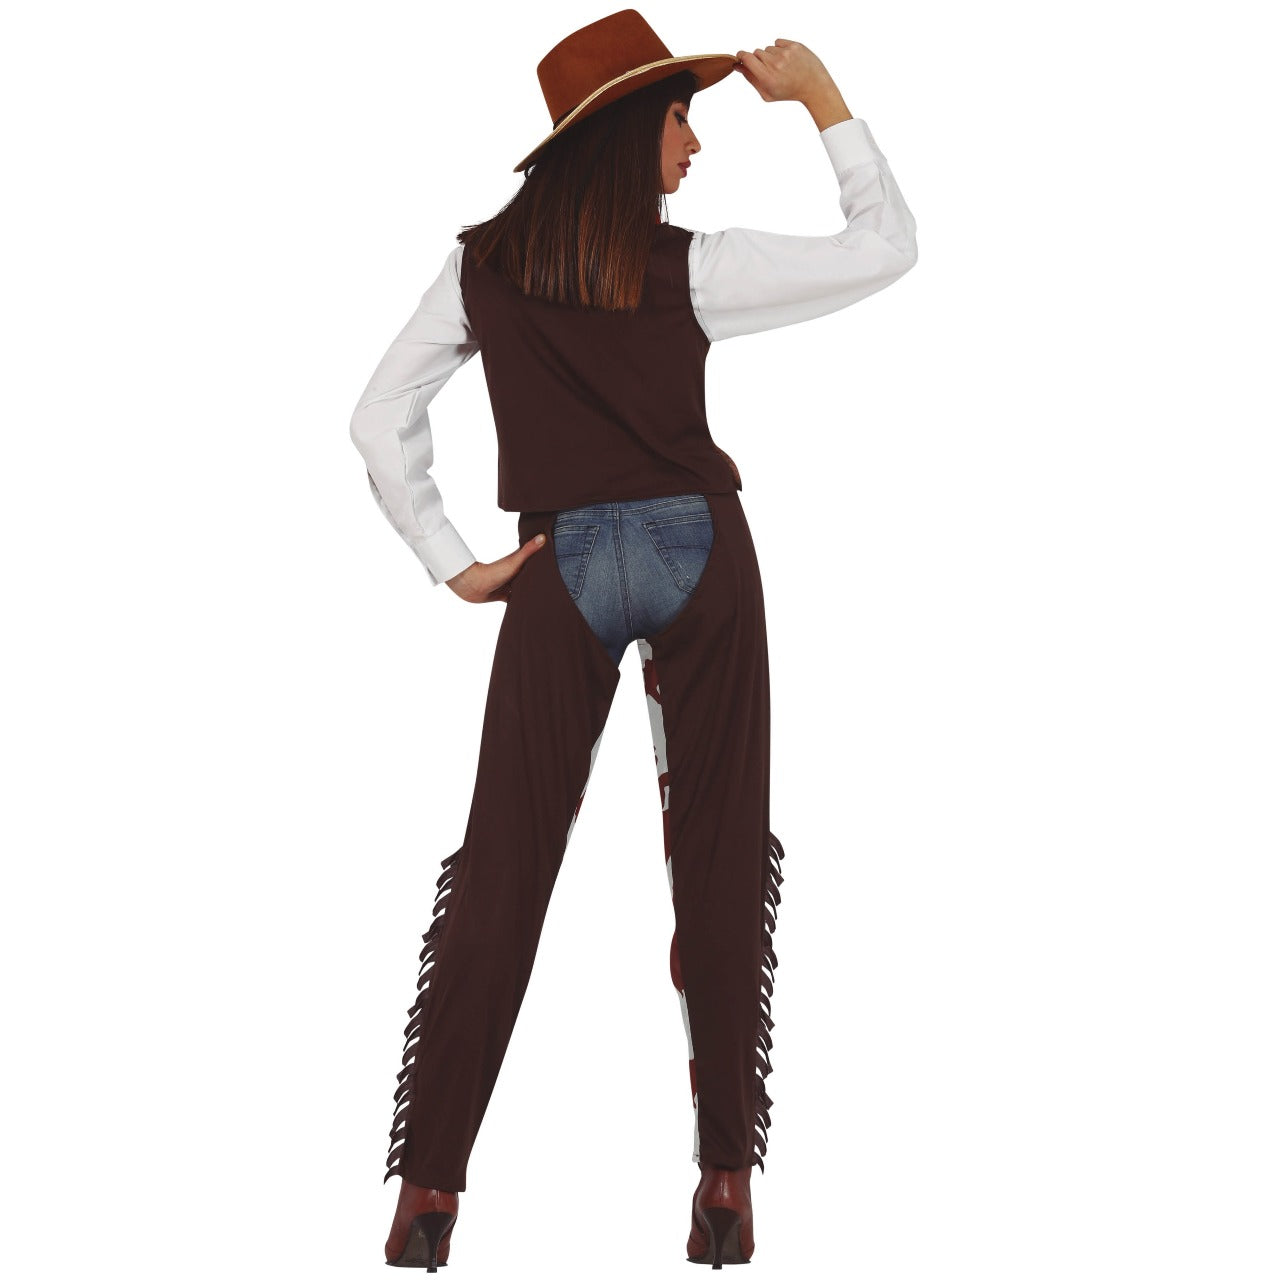 Costume da cowgirl texana per donna